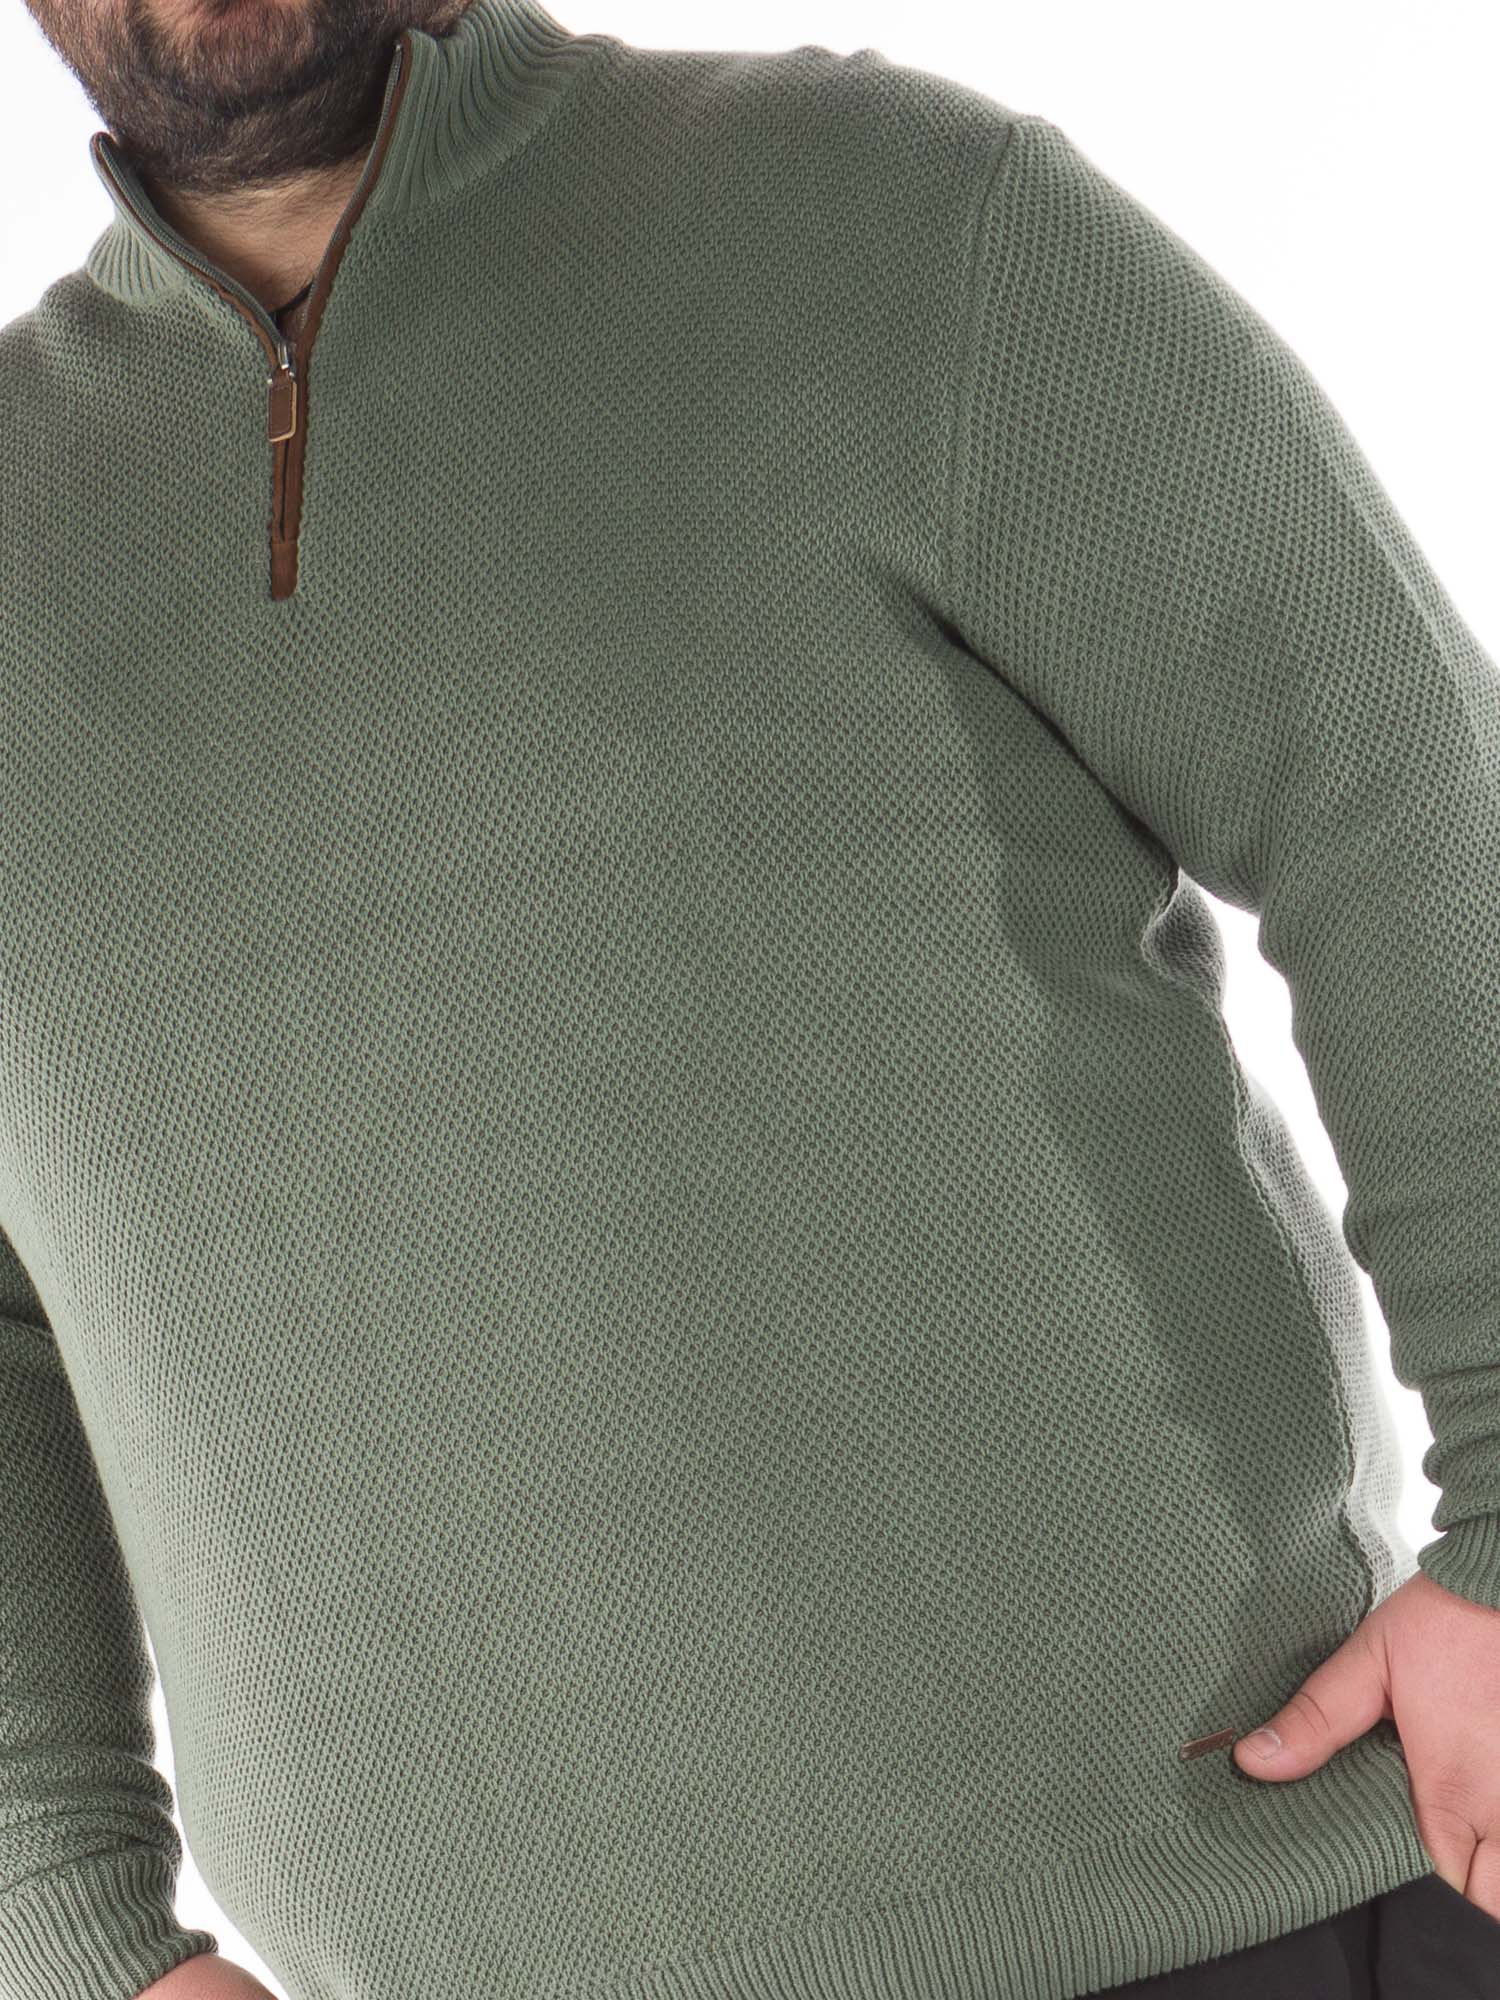 Ανδρική Μπλούζα Πλεκτή με Φερμουάρ Plus Size - Πράσινο